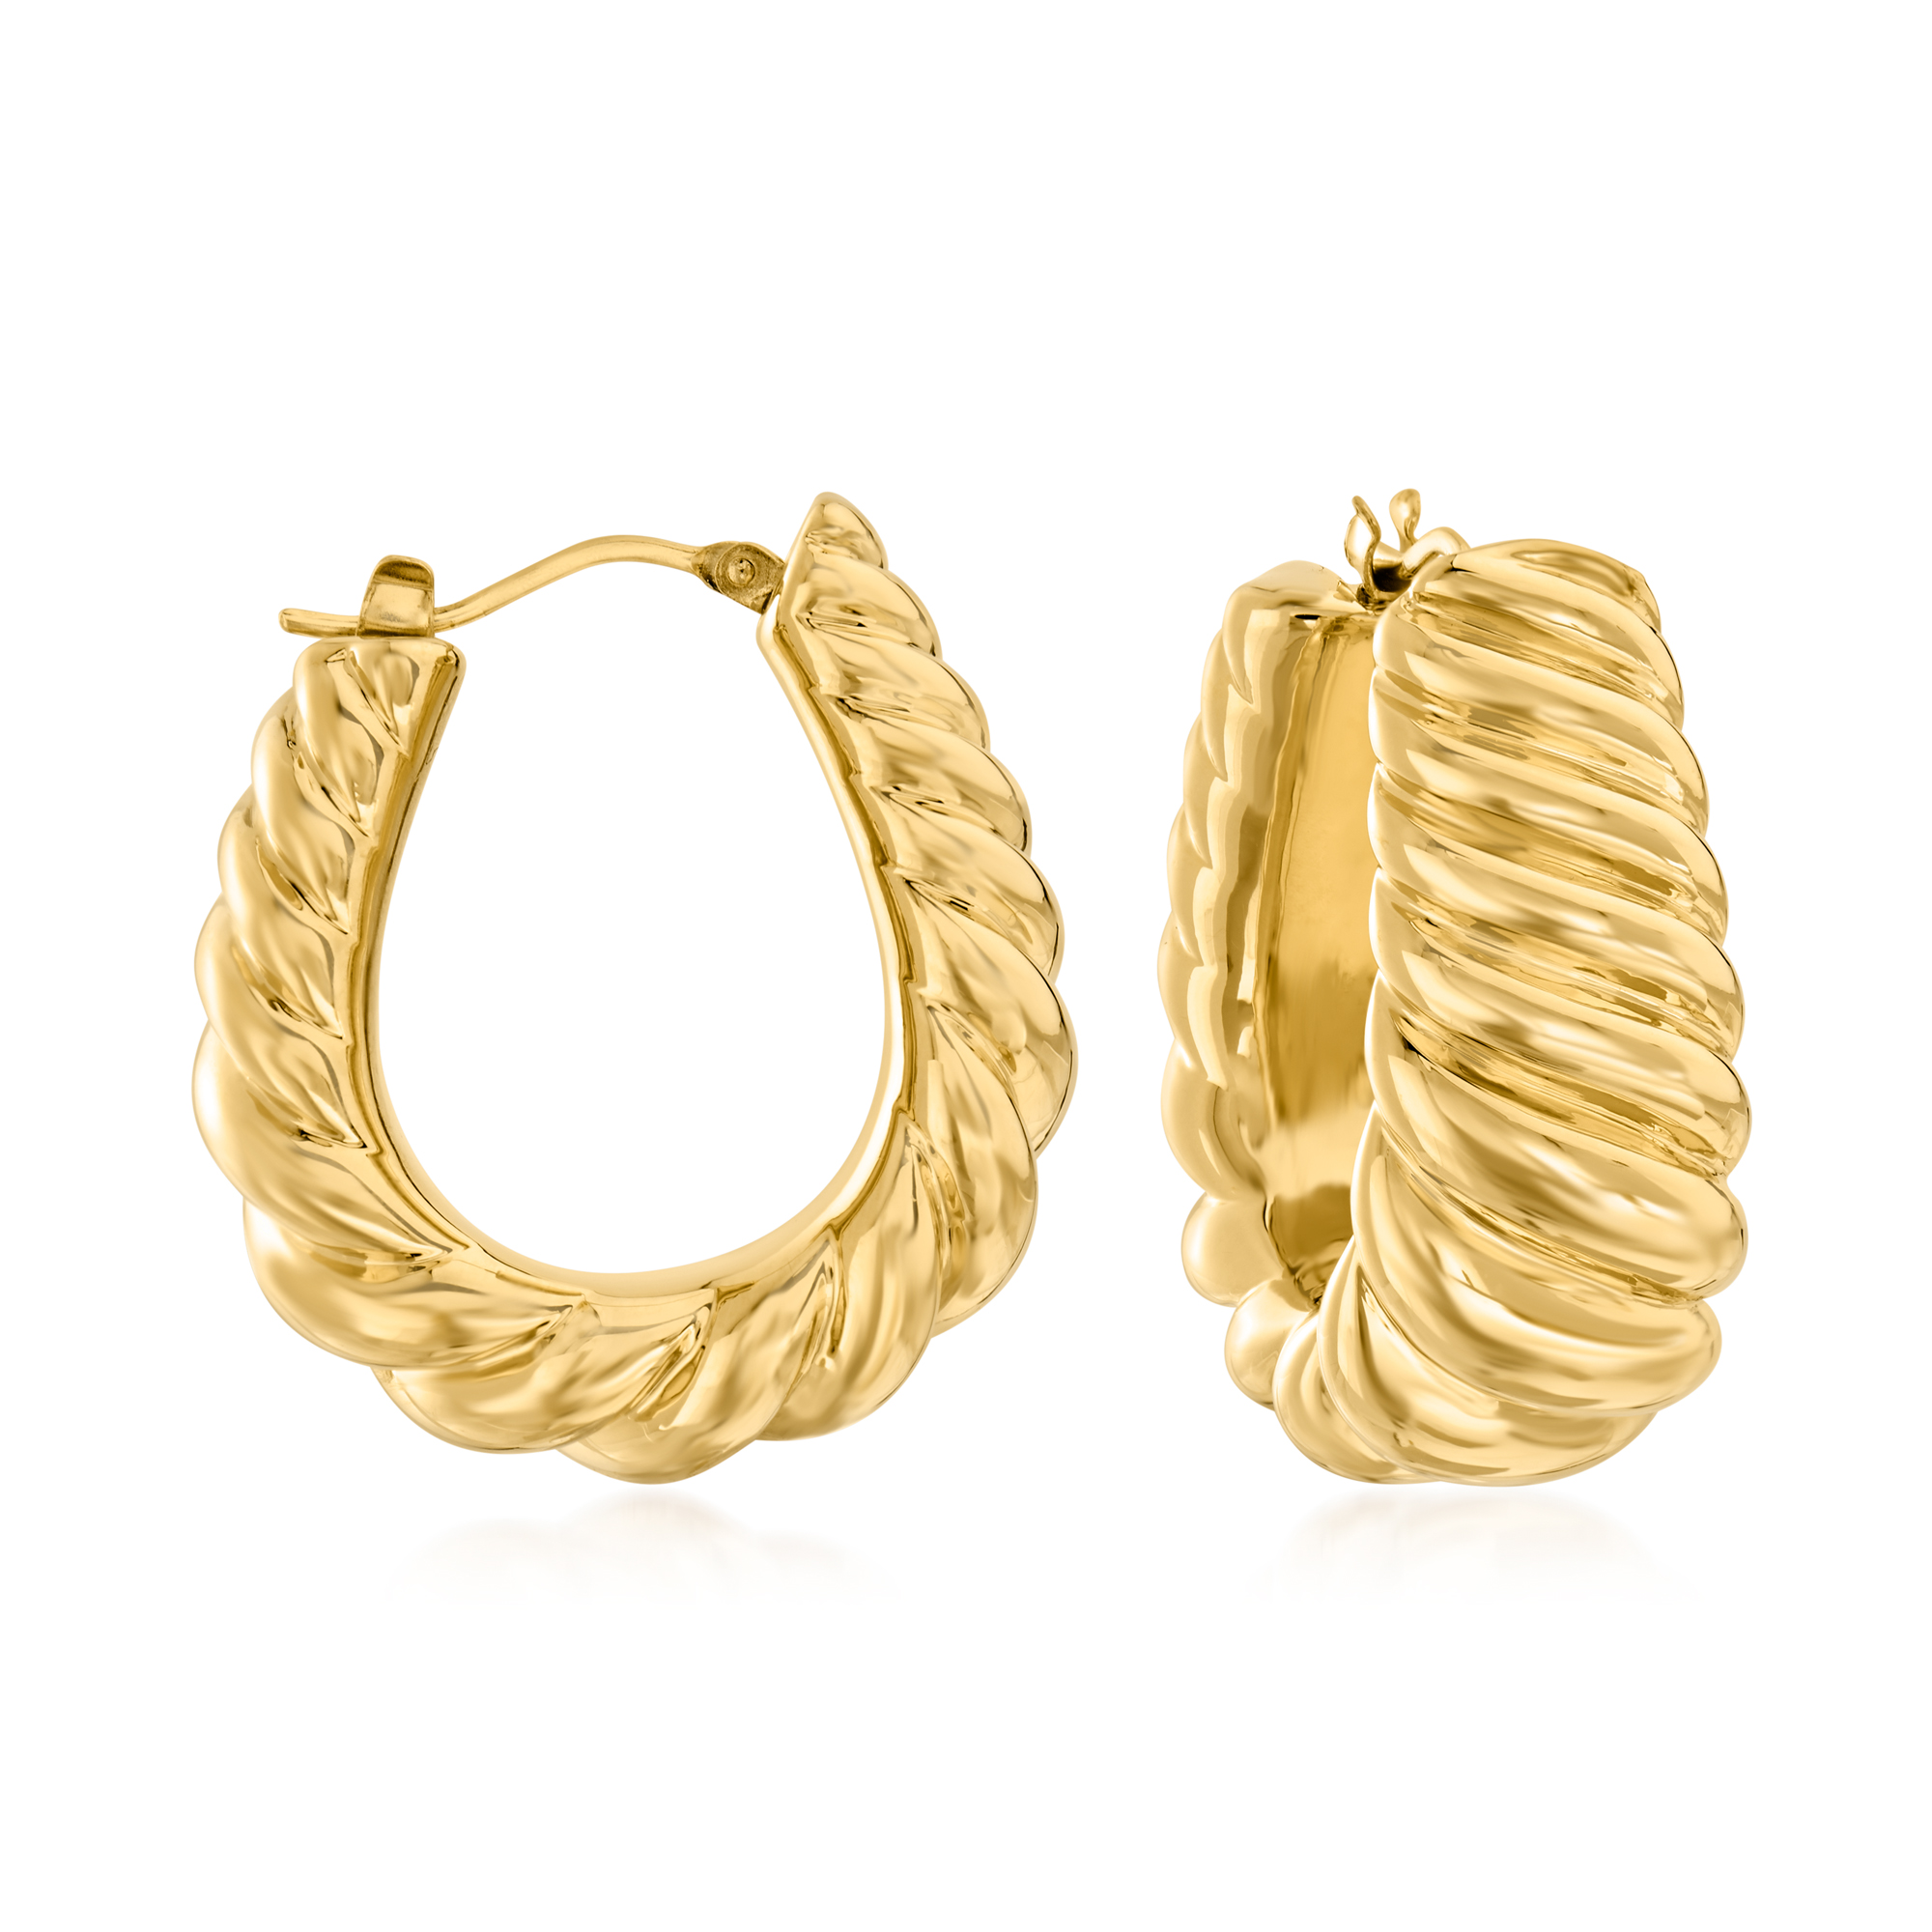 Italian Andiamo 14kt Yellow Gold Over Resin Ribbed Hoop Earrings 